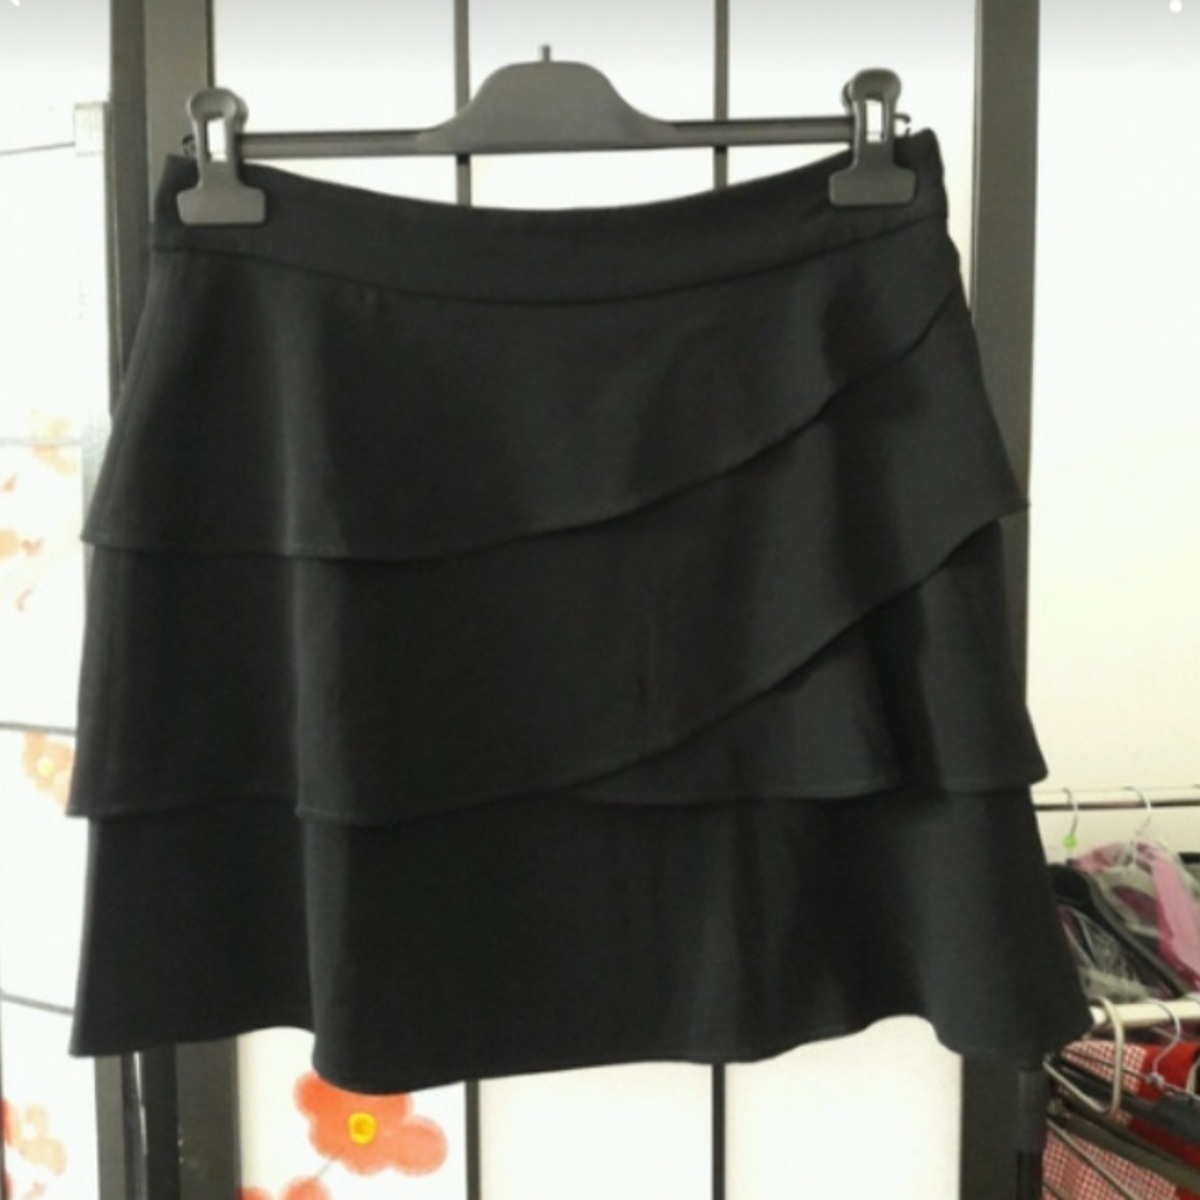 Vêtements Femme Je souhaite recevoir les bons plans des partenaires de JmksportShops Mini jupe Noir